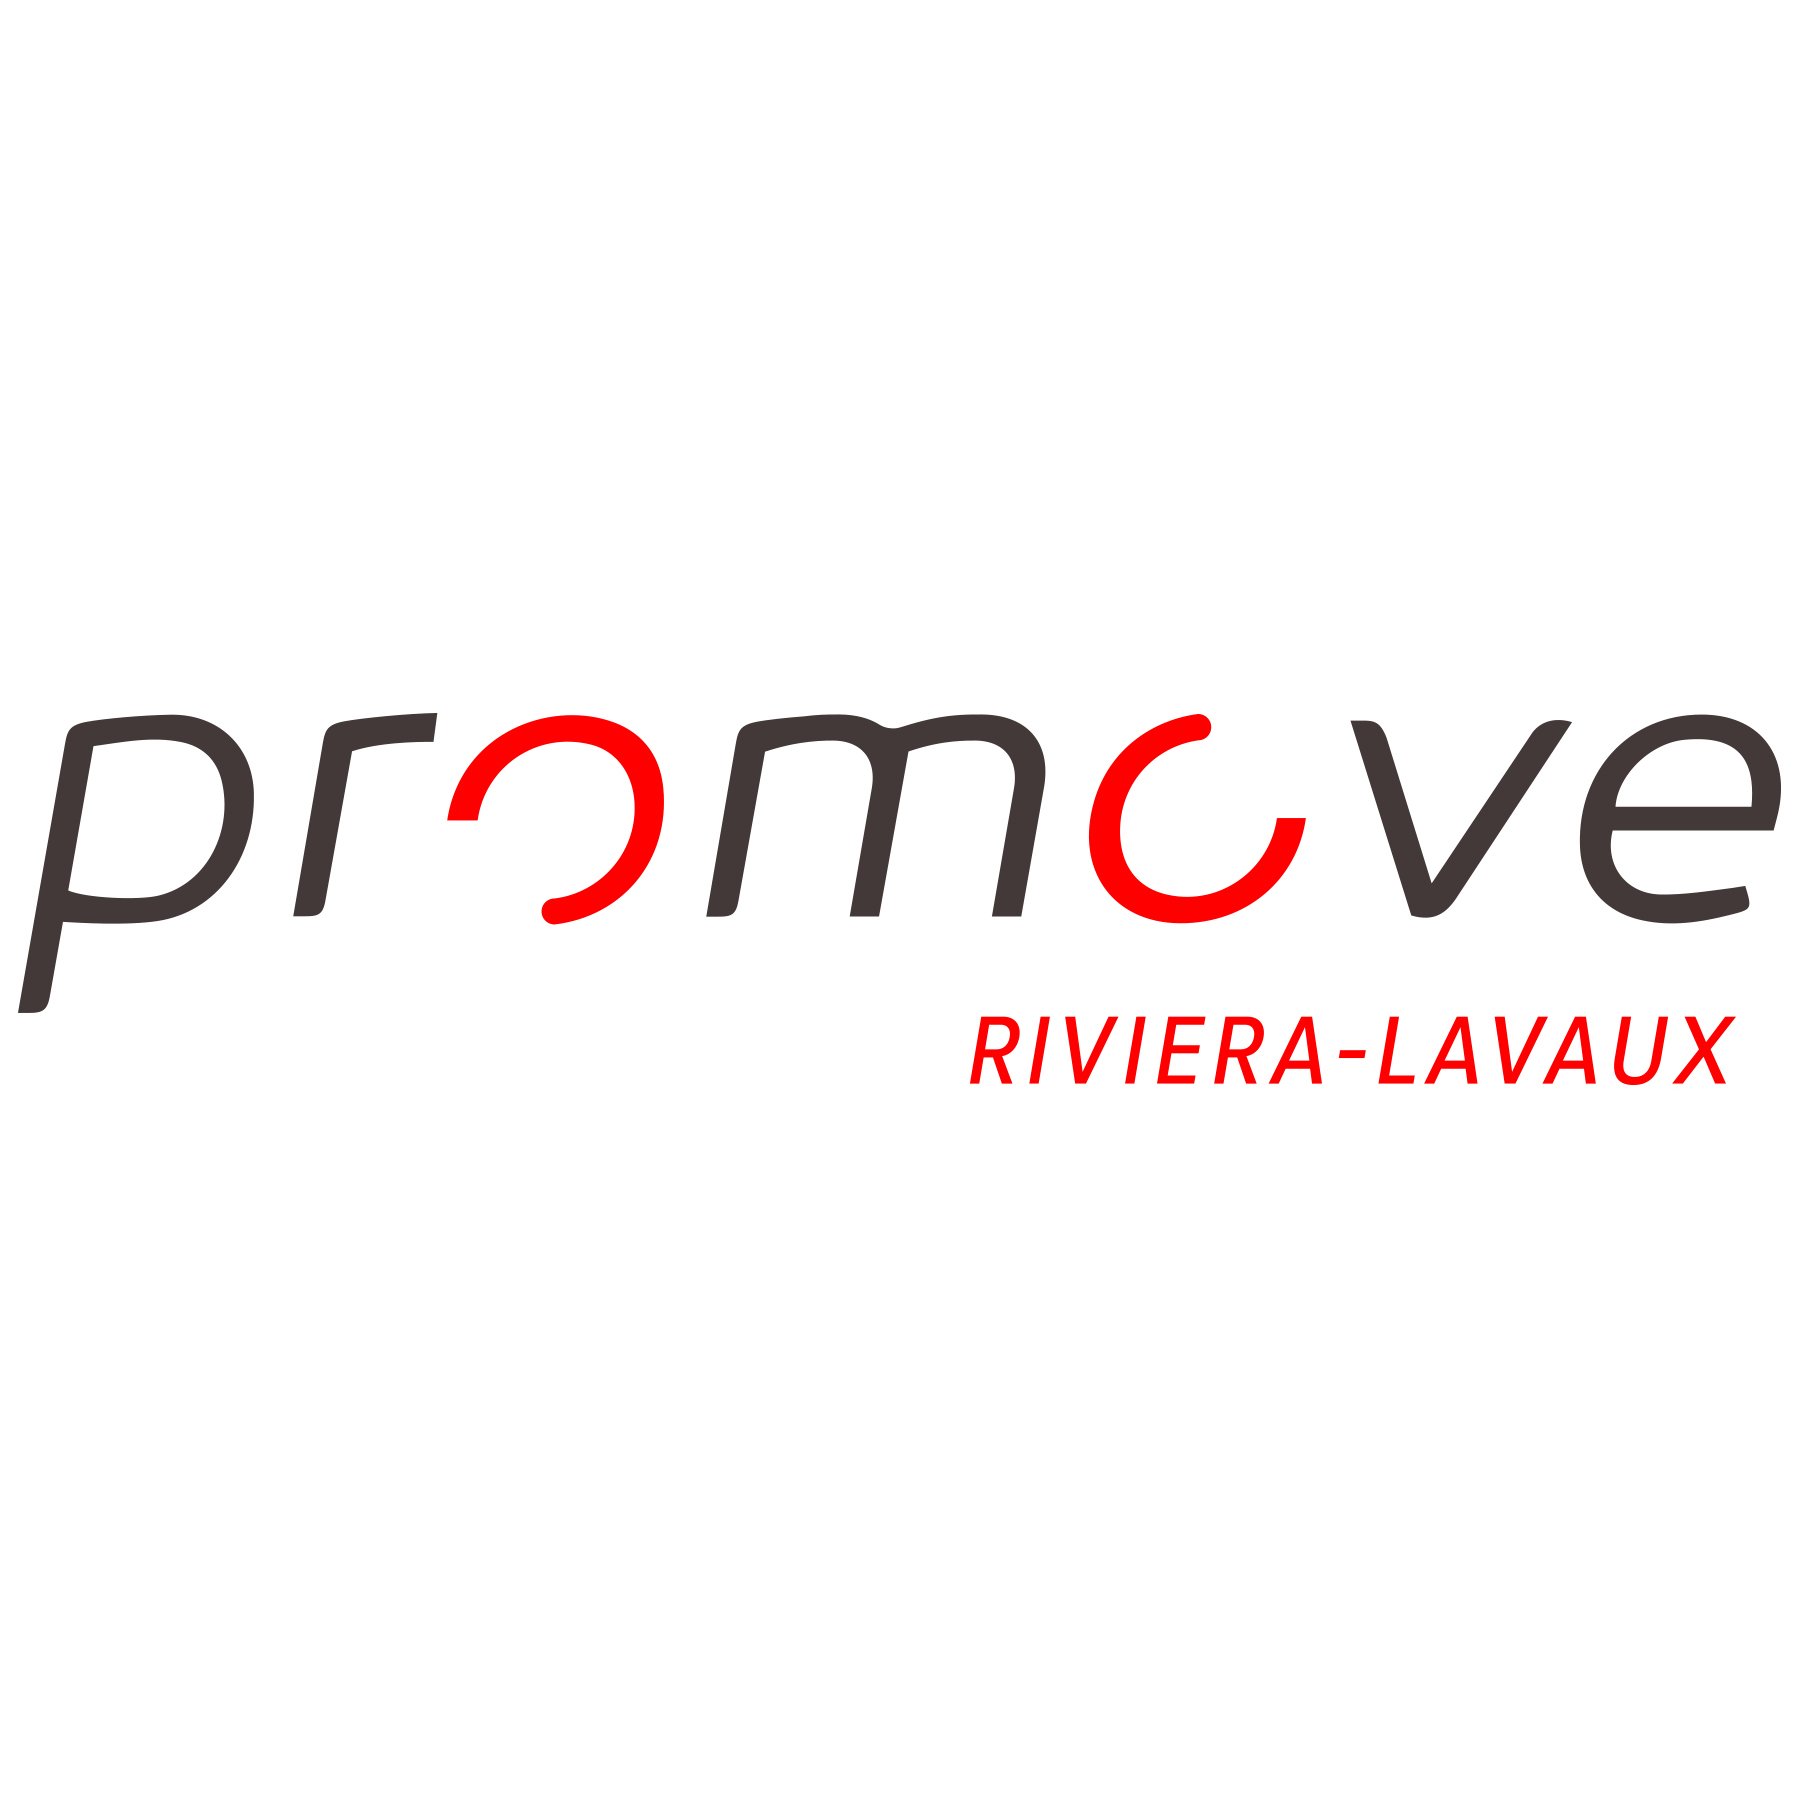 Promove est l’organisme officiel dédié au développement économique de la région Riviera-Lavaux en Suisse.